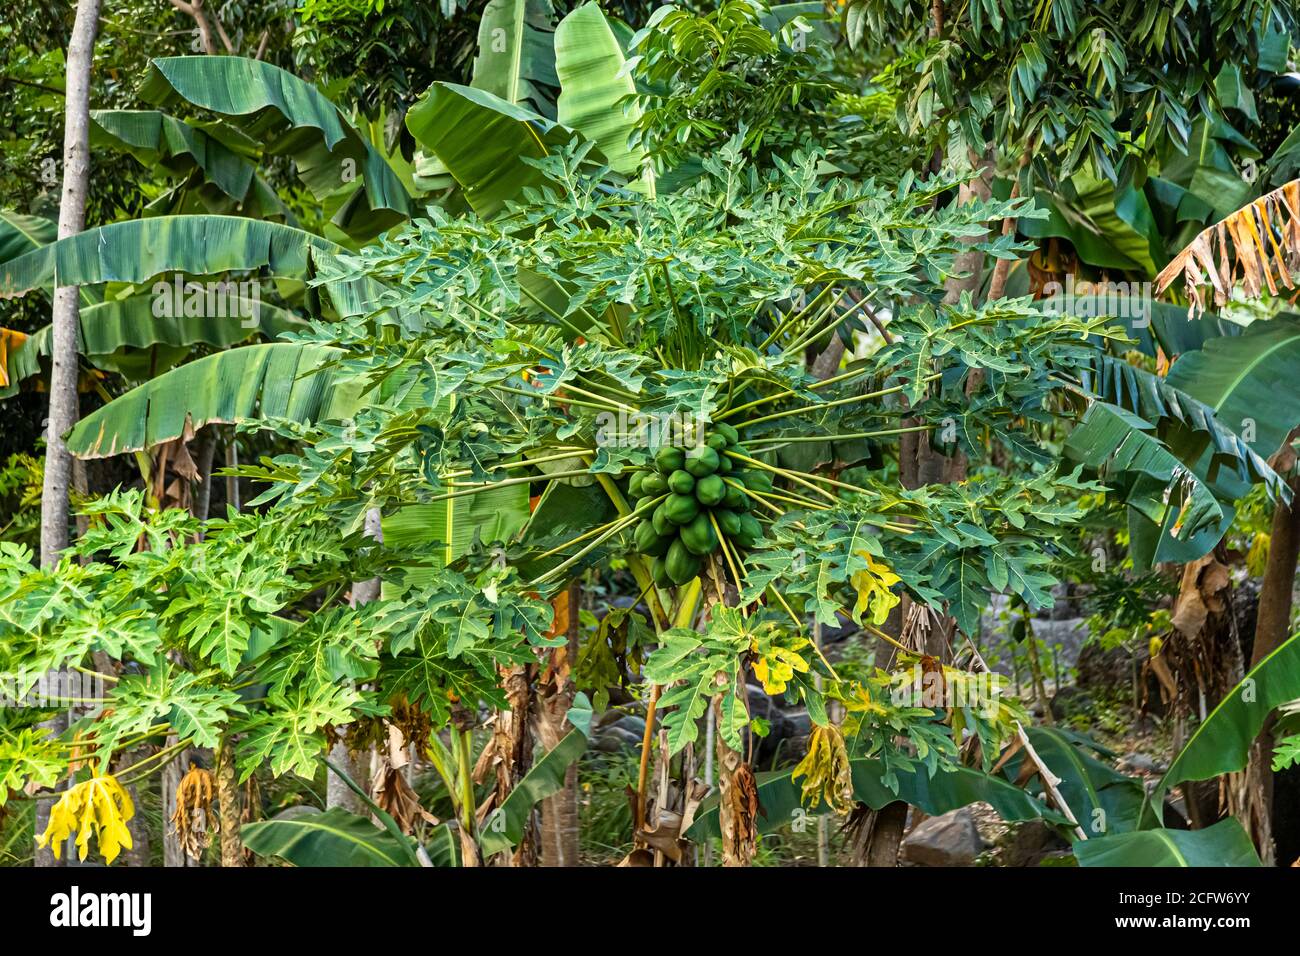 Papayas on the tree, Sunda Islands, Indonesia Stock Photo